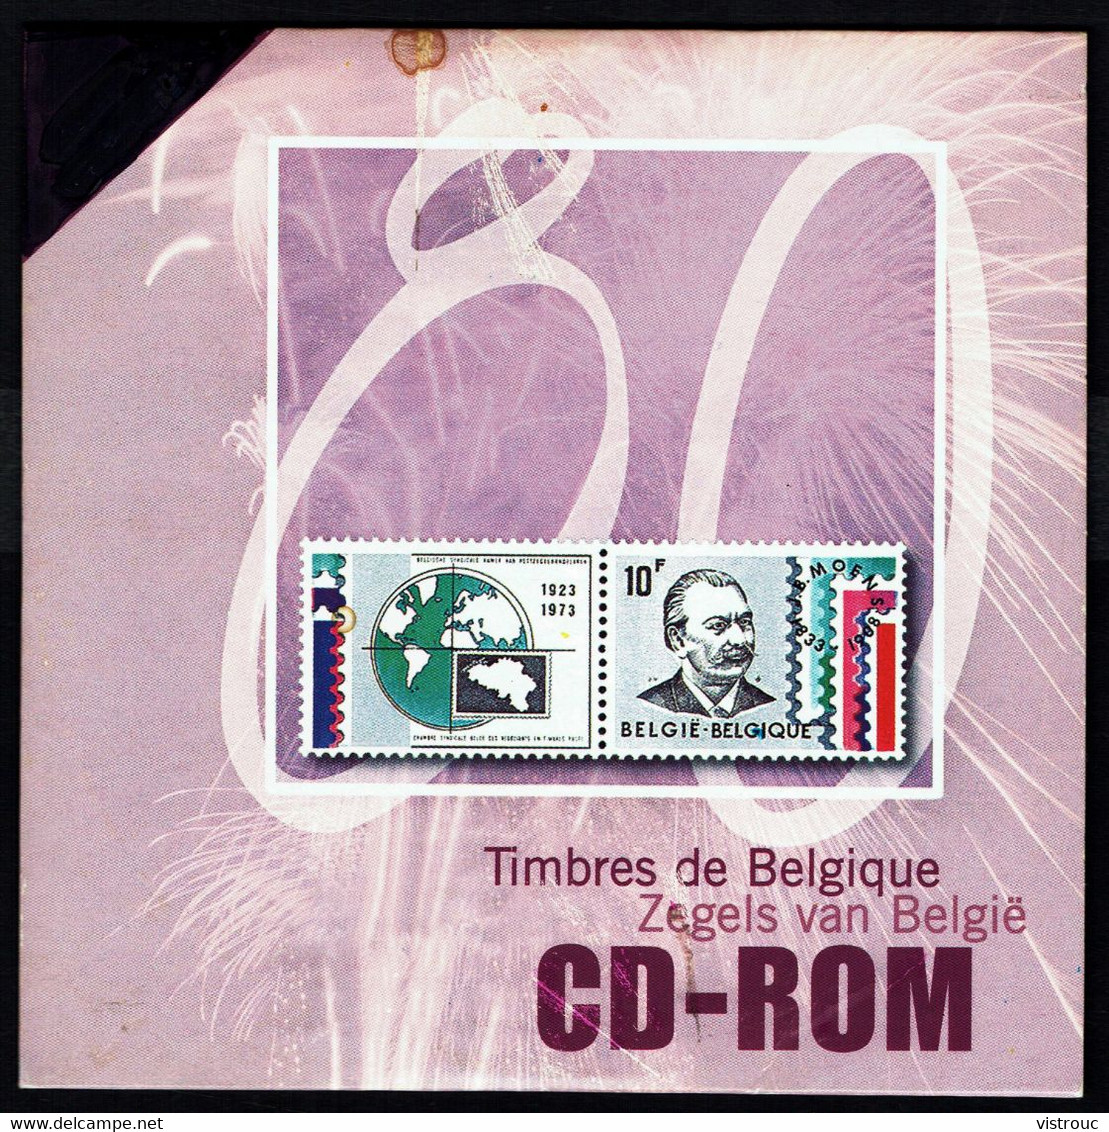 CD ROM "TIMBRES DE BELGIQUE". - Français